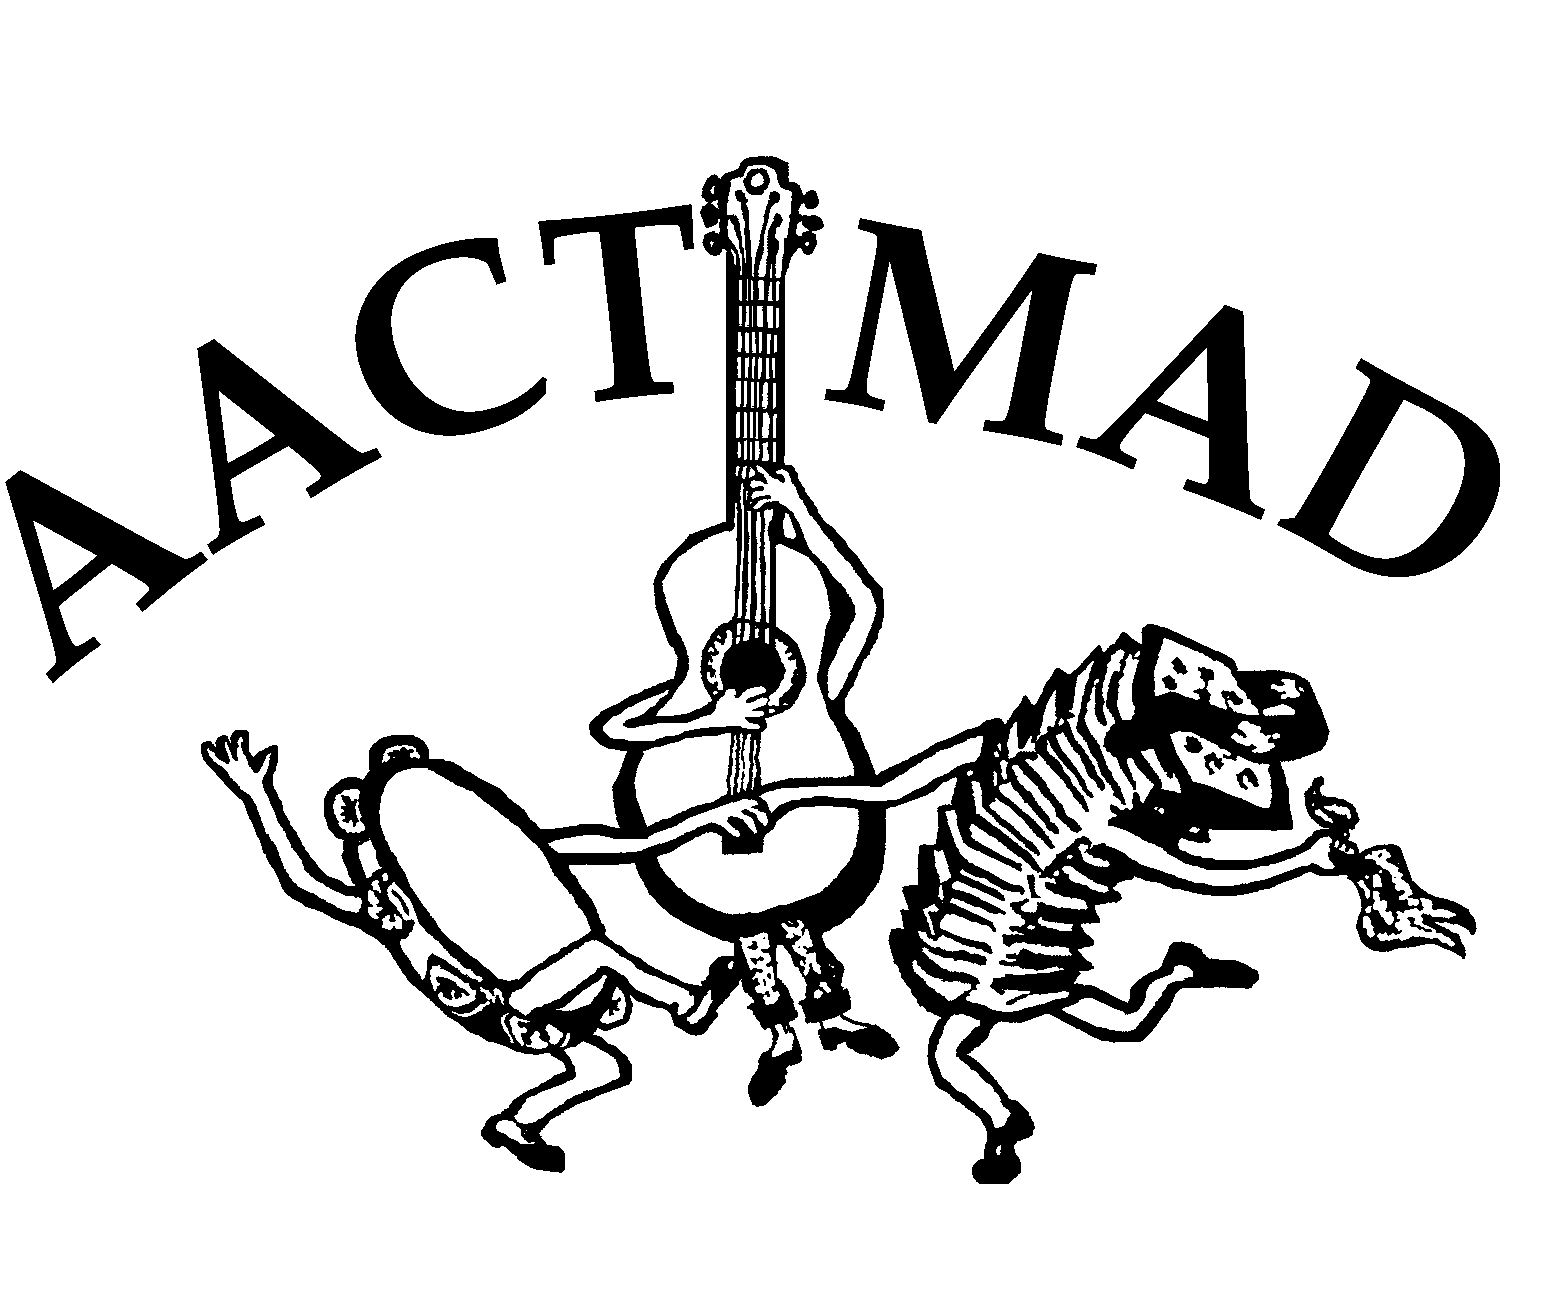 AACTMAD logo